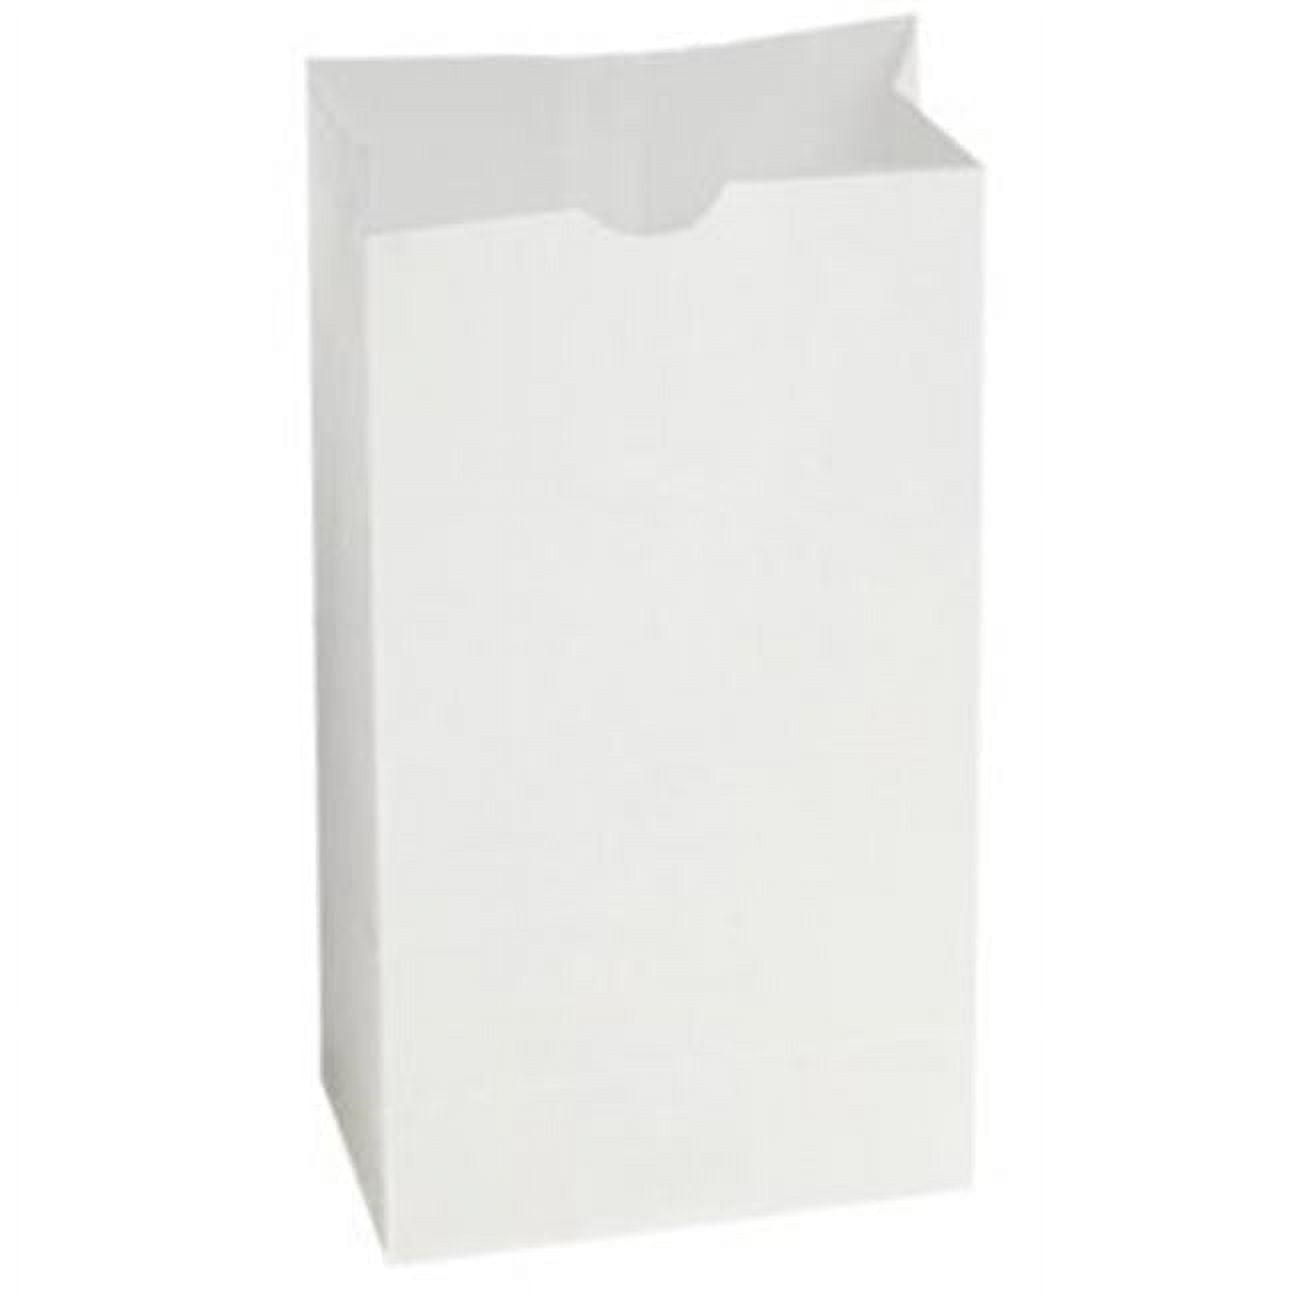 300296 Grocery Bag Dubl Wax, White - 6 Lb